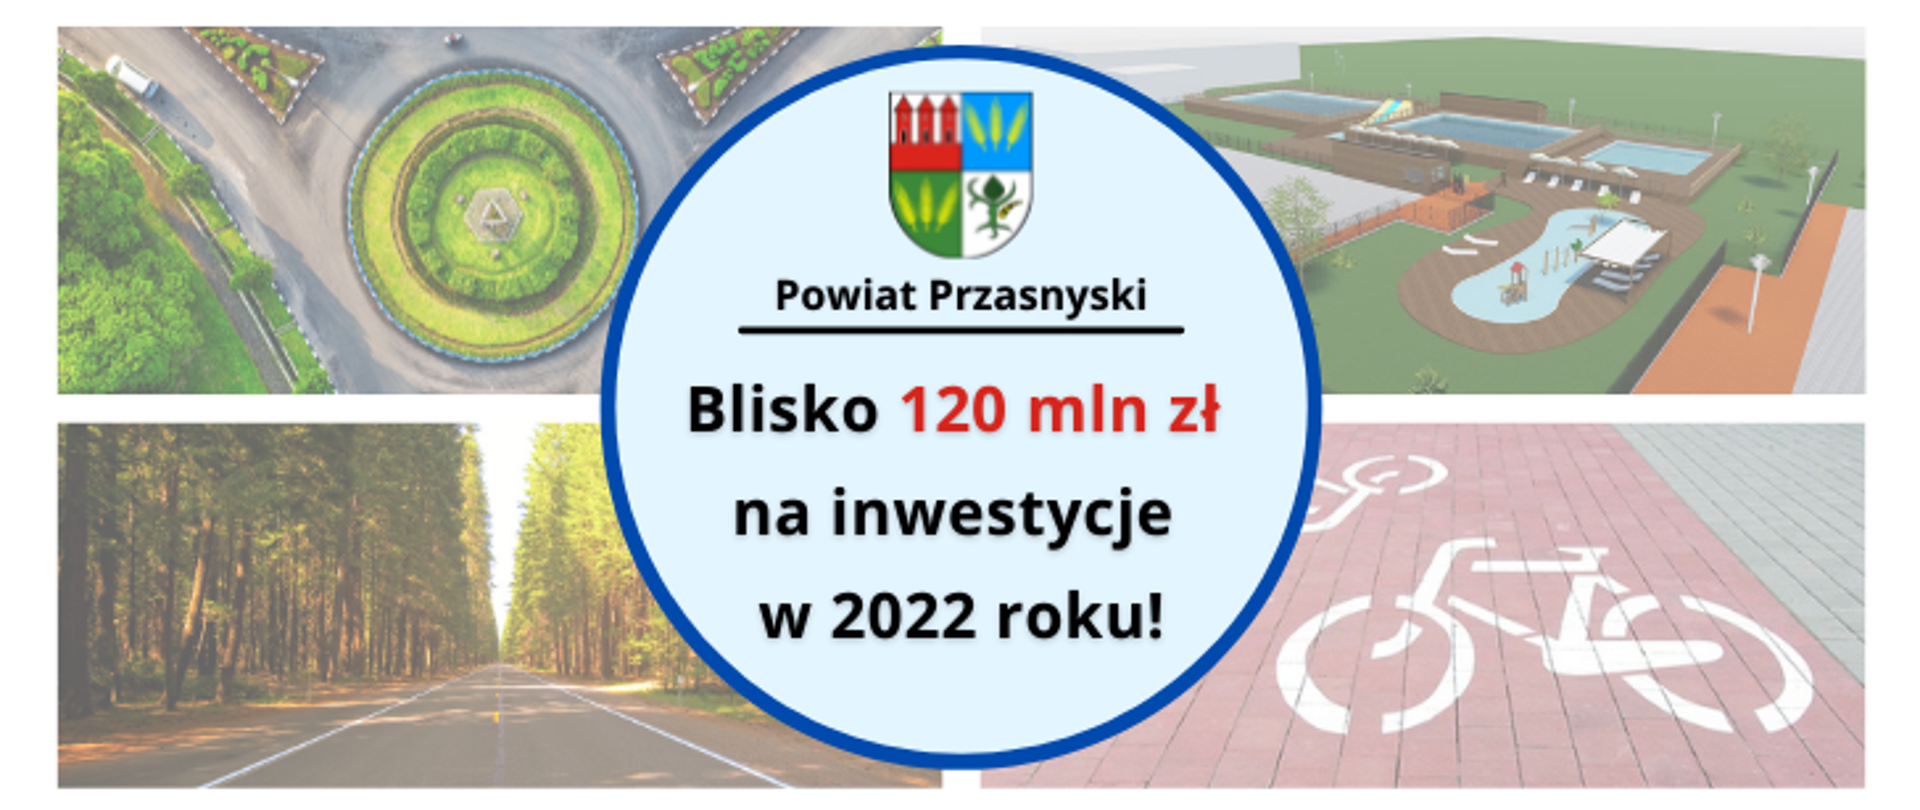 Grafika promująca informację o wielkości środków - 120 milionów złotych, przeznaczonych na inwestycje Powiatu Przasnyskiego w 2022 roku.